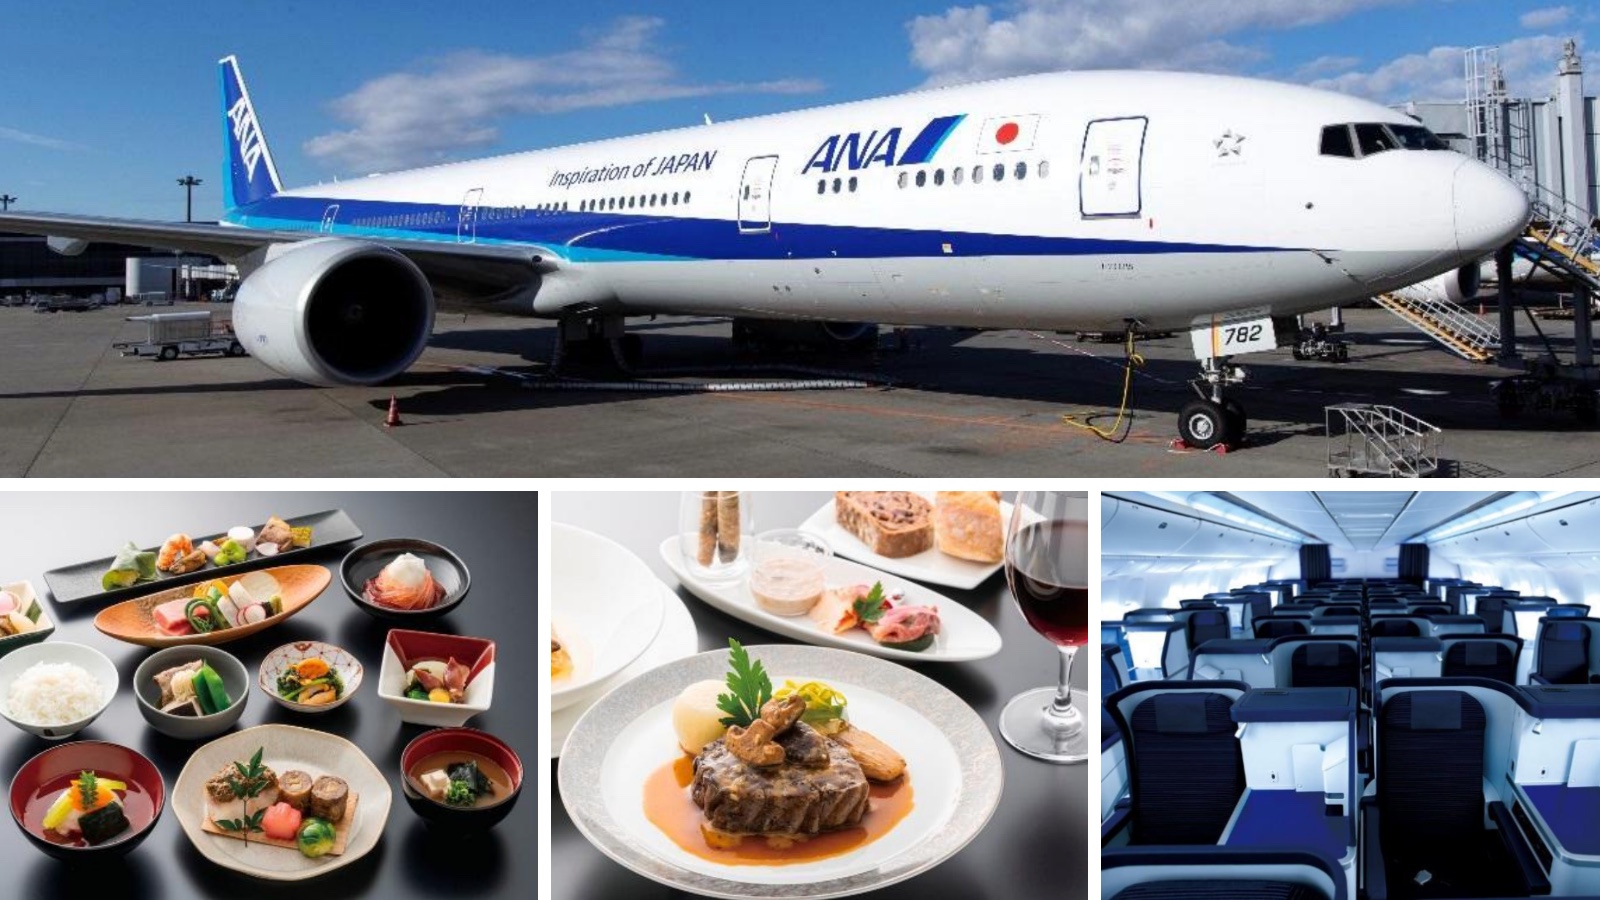 Dieses Flugzeug ist auch ein Restaurant.